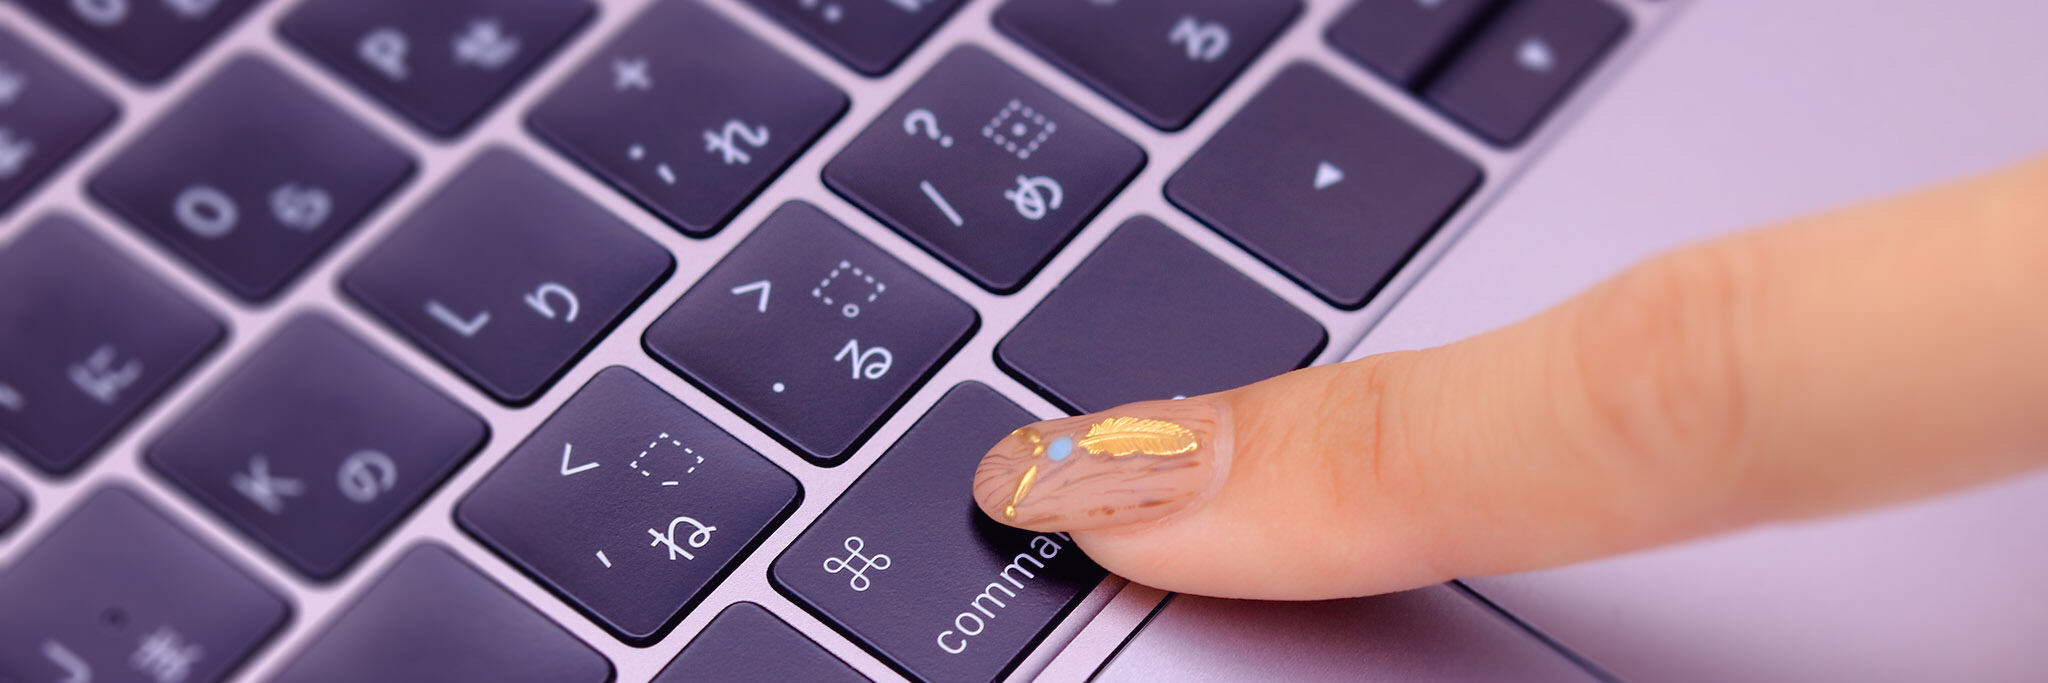 Mac のキーボード